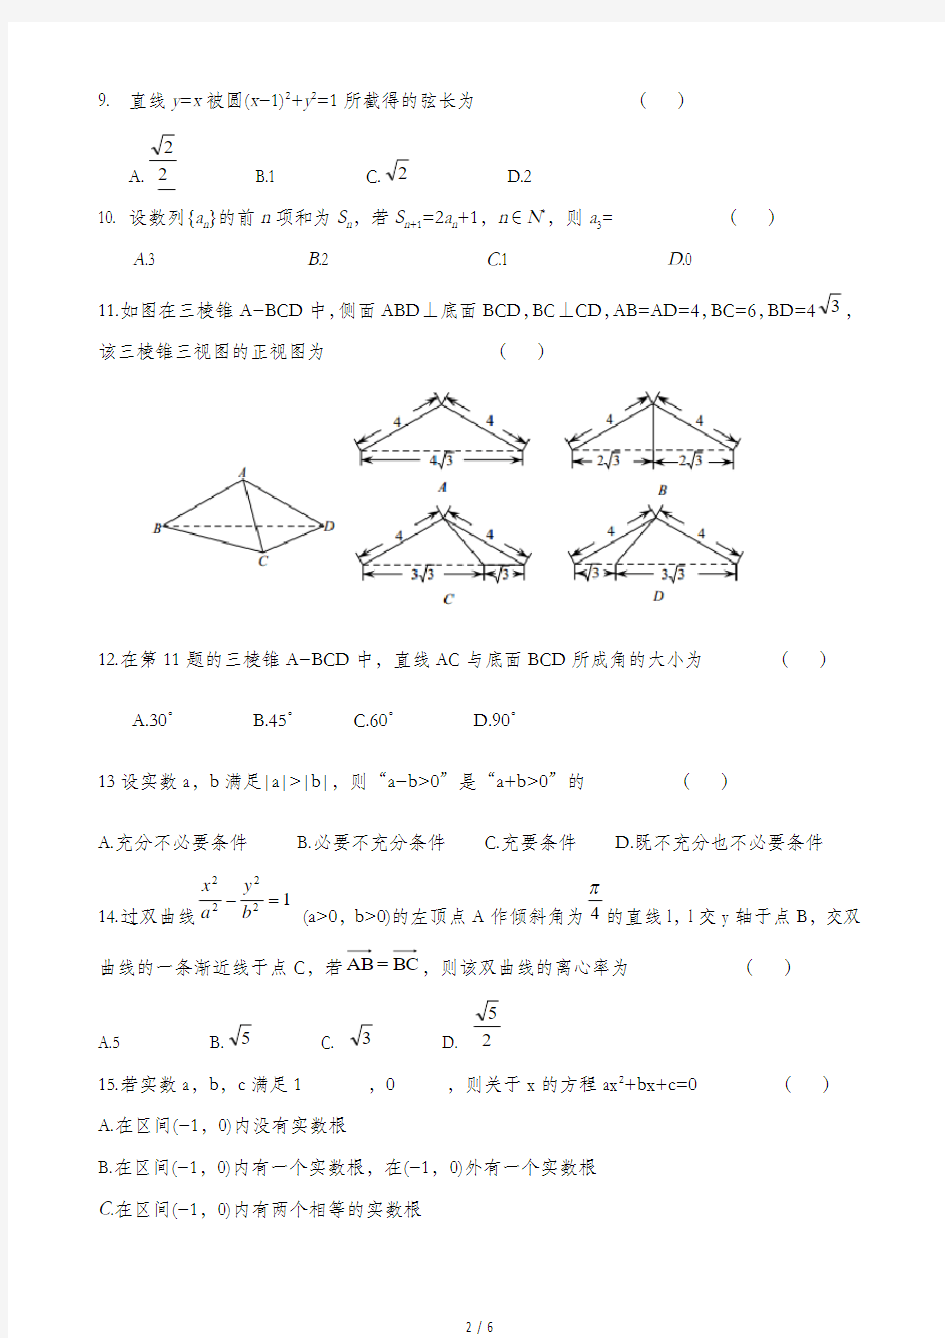 2017年4月浙江省学业水平考试数学试题(含标准答案)